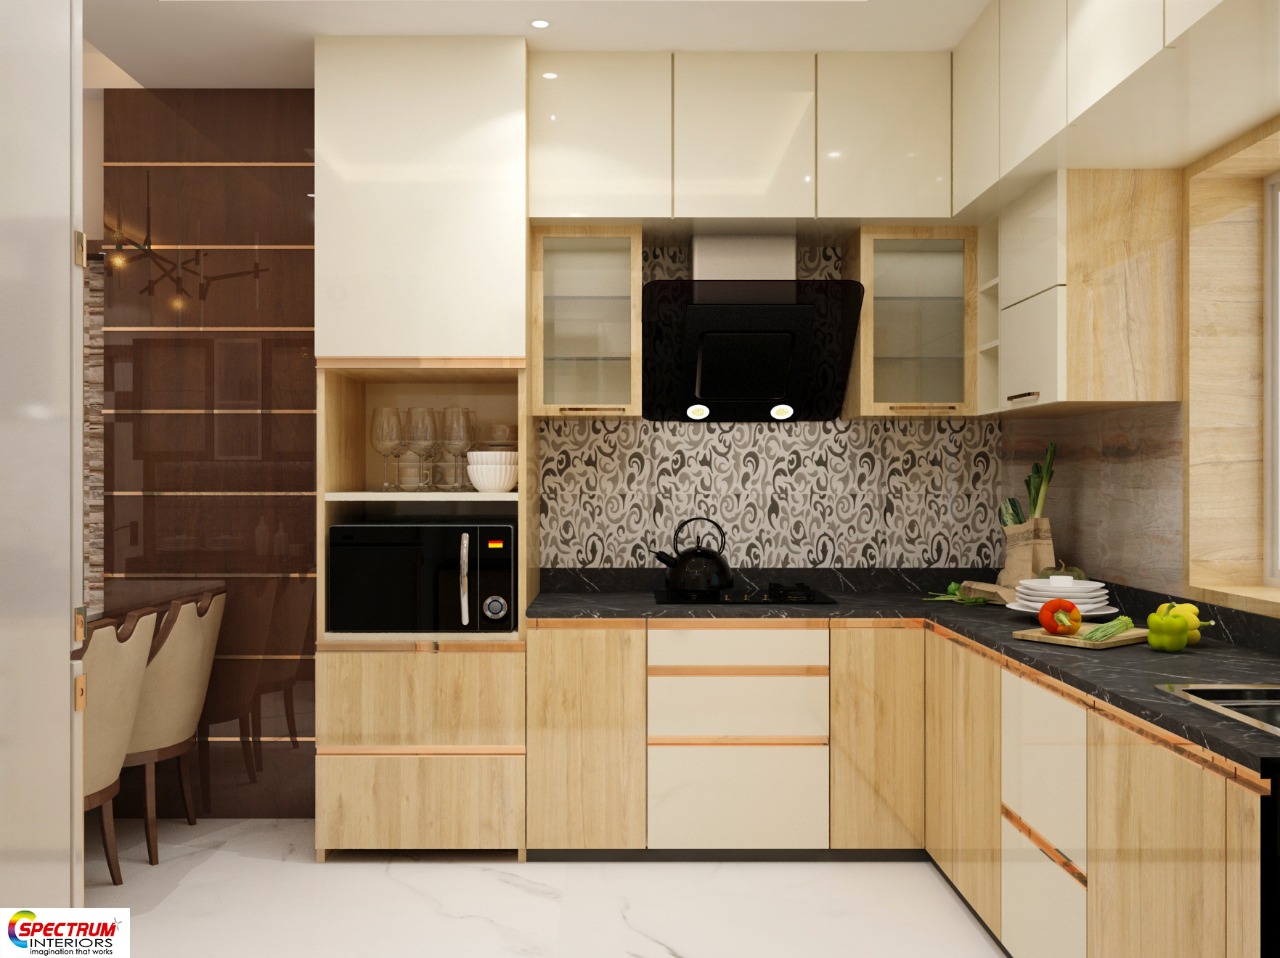 top 10 modular kitchen design